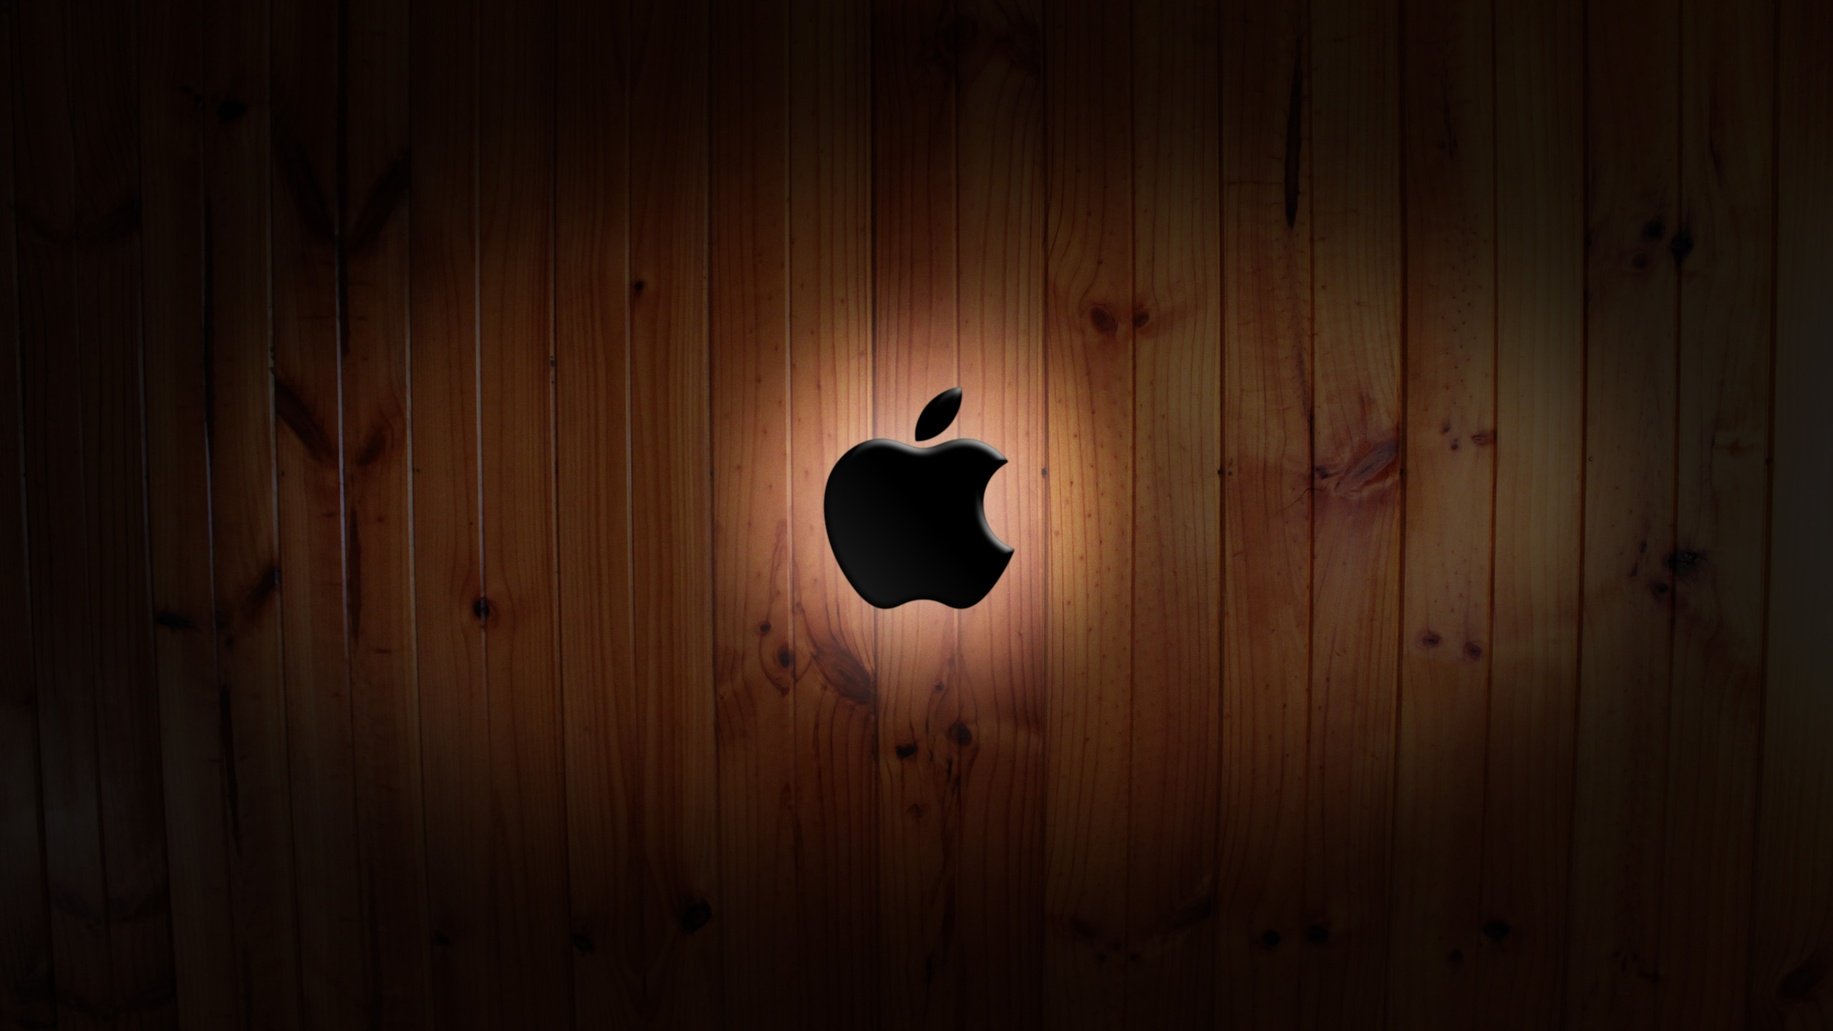 Apple hd wallpaper downloads free